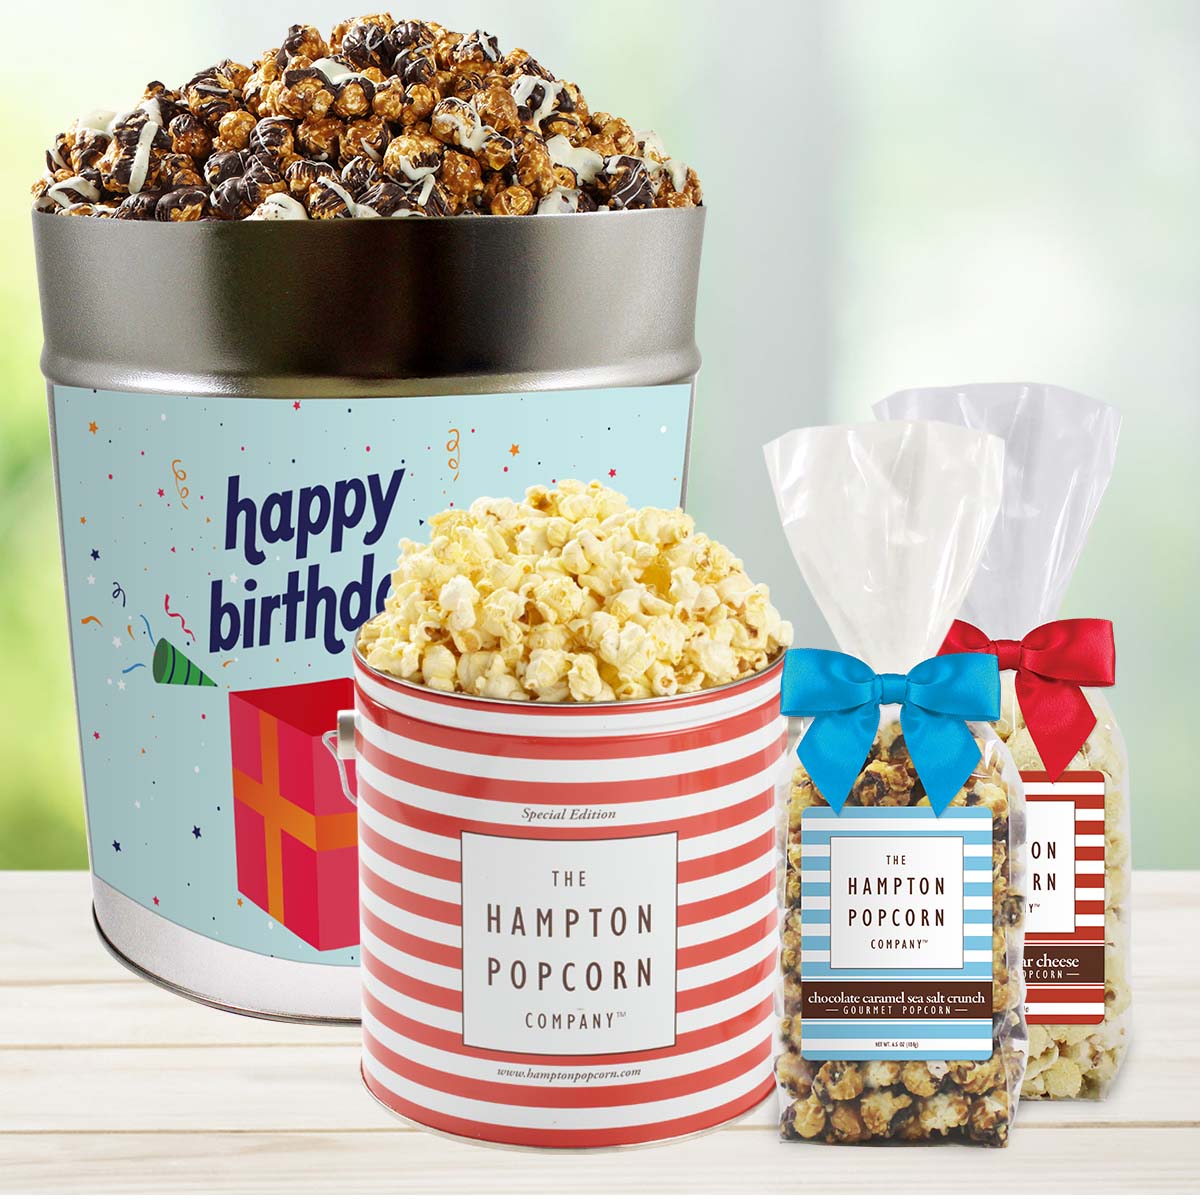 Bacon Cheddar Popcorn Seasoning – Hampton Foods